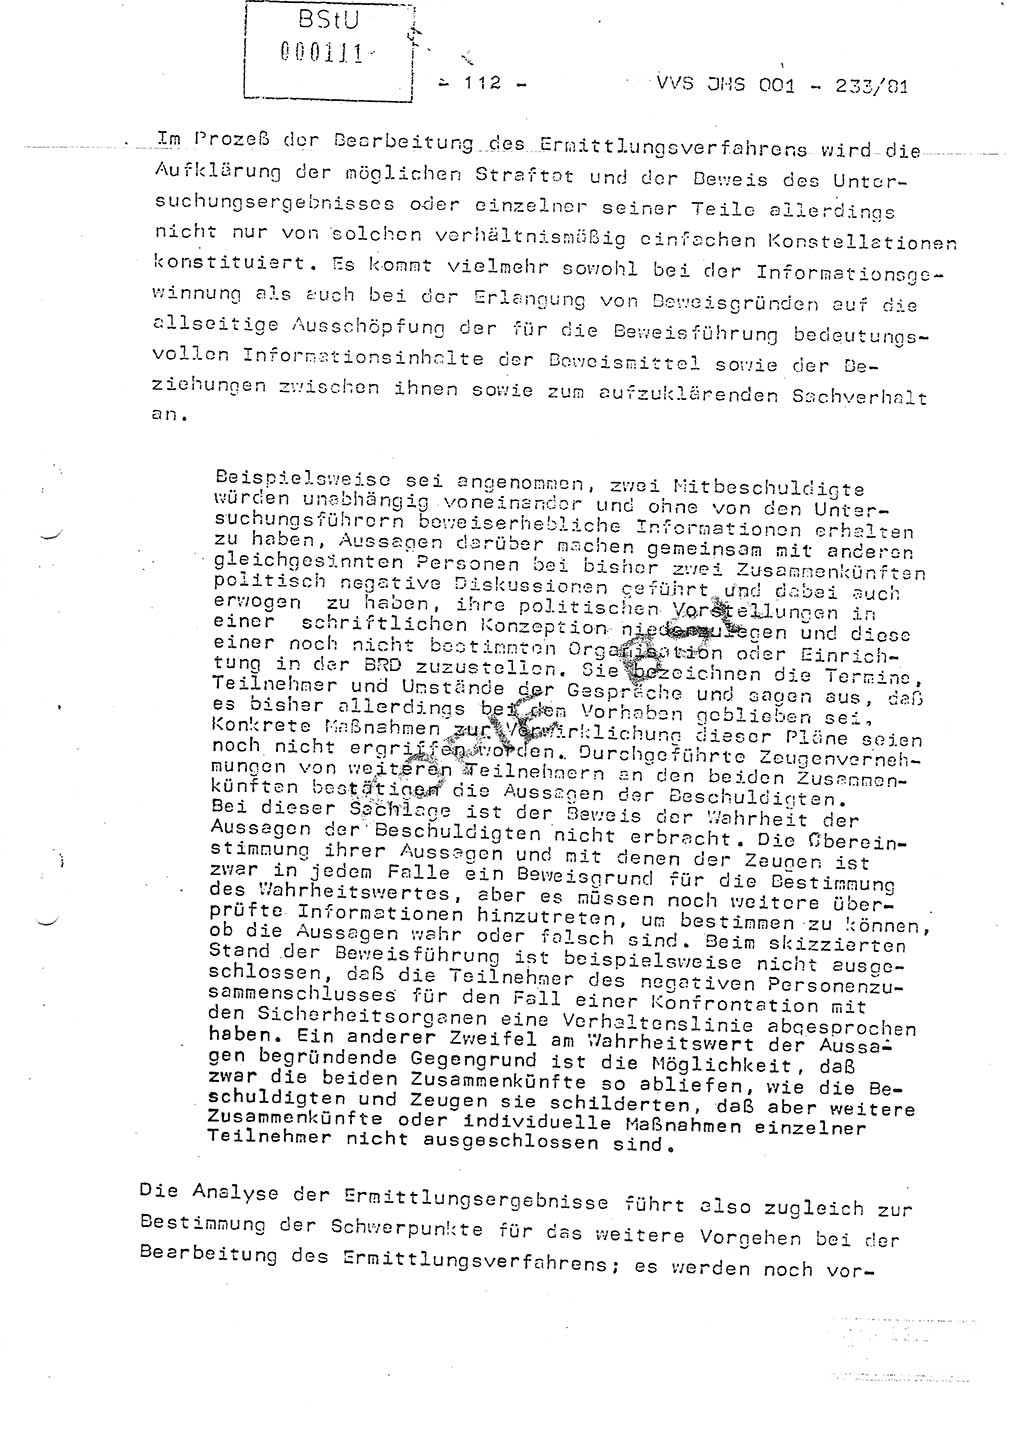 Dissertation Oberstleutnant Horst Zank (JHS), Oberstleutnant Dr. Karl-Heinz Knoblauch (JHS), Oberstleutnant Gustav-Adolf Kowalewski (HA Ⅸ), Oberstleutnant Wolfgang Plötner (HA Ⅸ), Ministerium für Staatssicherheit (MfS) [Deutsche Demokratische Republik (DDR)], Juristische Hochschule (JHS), Vertrauliche Verschlußsache (VVS) o001-233/81, Potsdam 1981, Blatt 112 (Diss. MfS DDR JHS VVS o001-233/81 1981, Bl. 112)